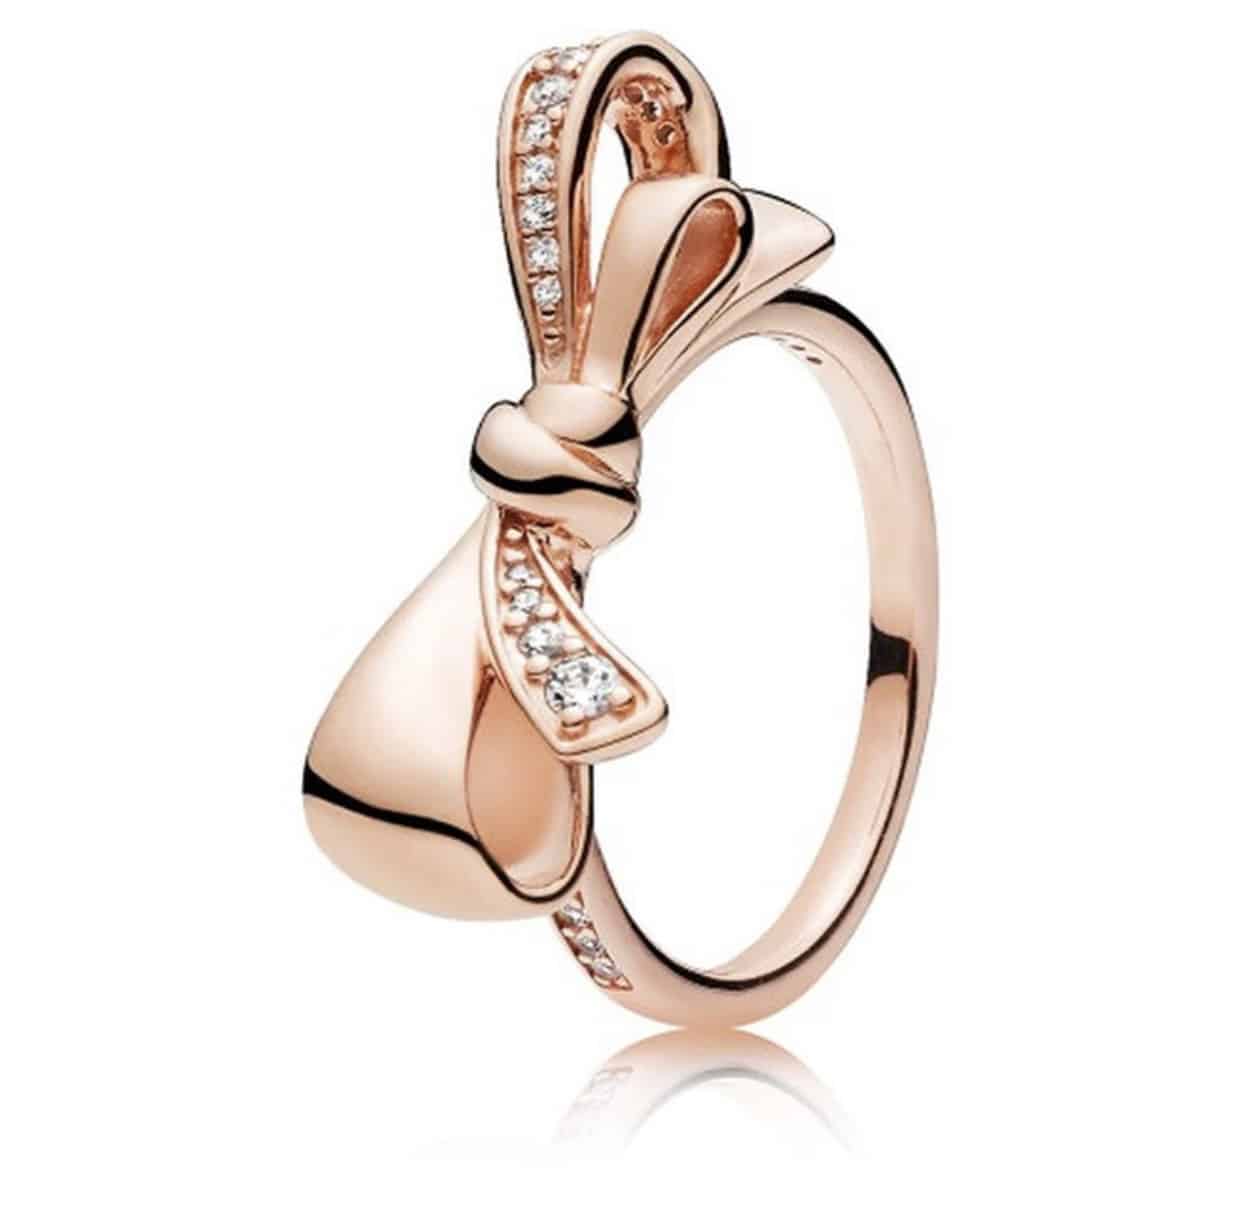 Product Vooraanzicht van onze prachtige statement ring rose. Deze ring uit ons prachtige ringen collectie is gemaakt van 925 sterling zilver met een laagje rose goud. Half ingelegd met zirkonia steentjes.